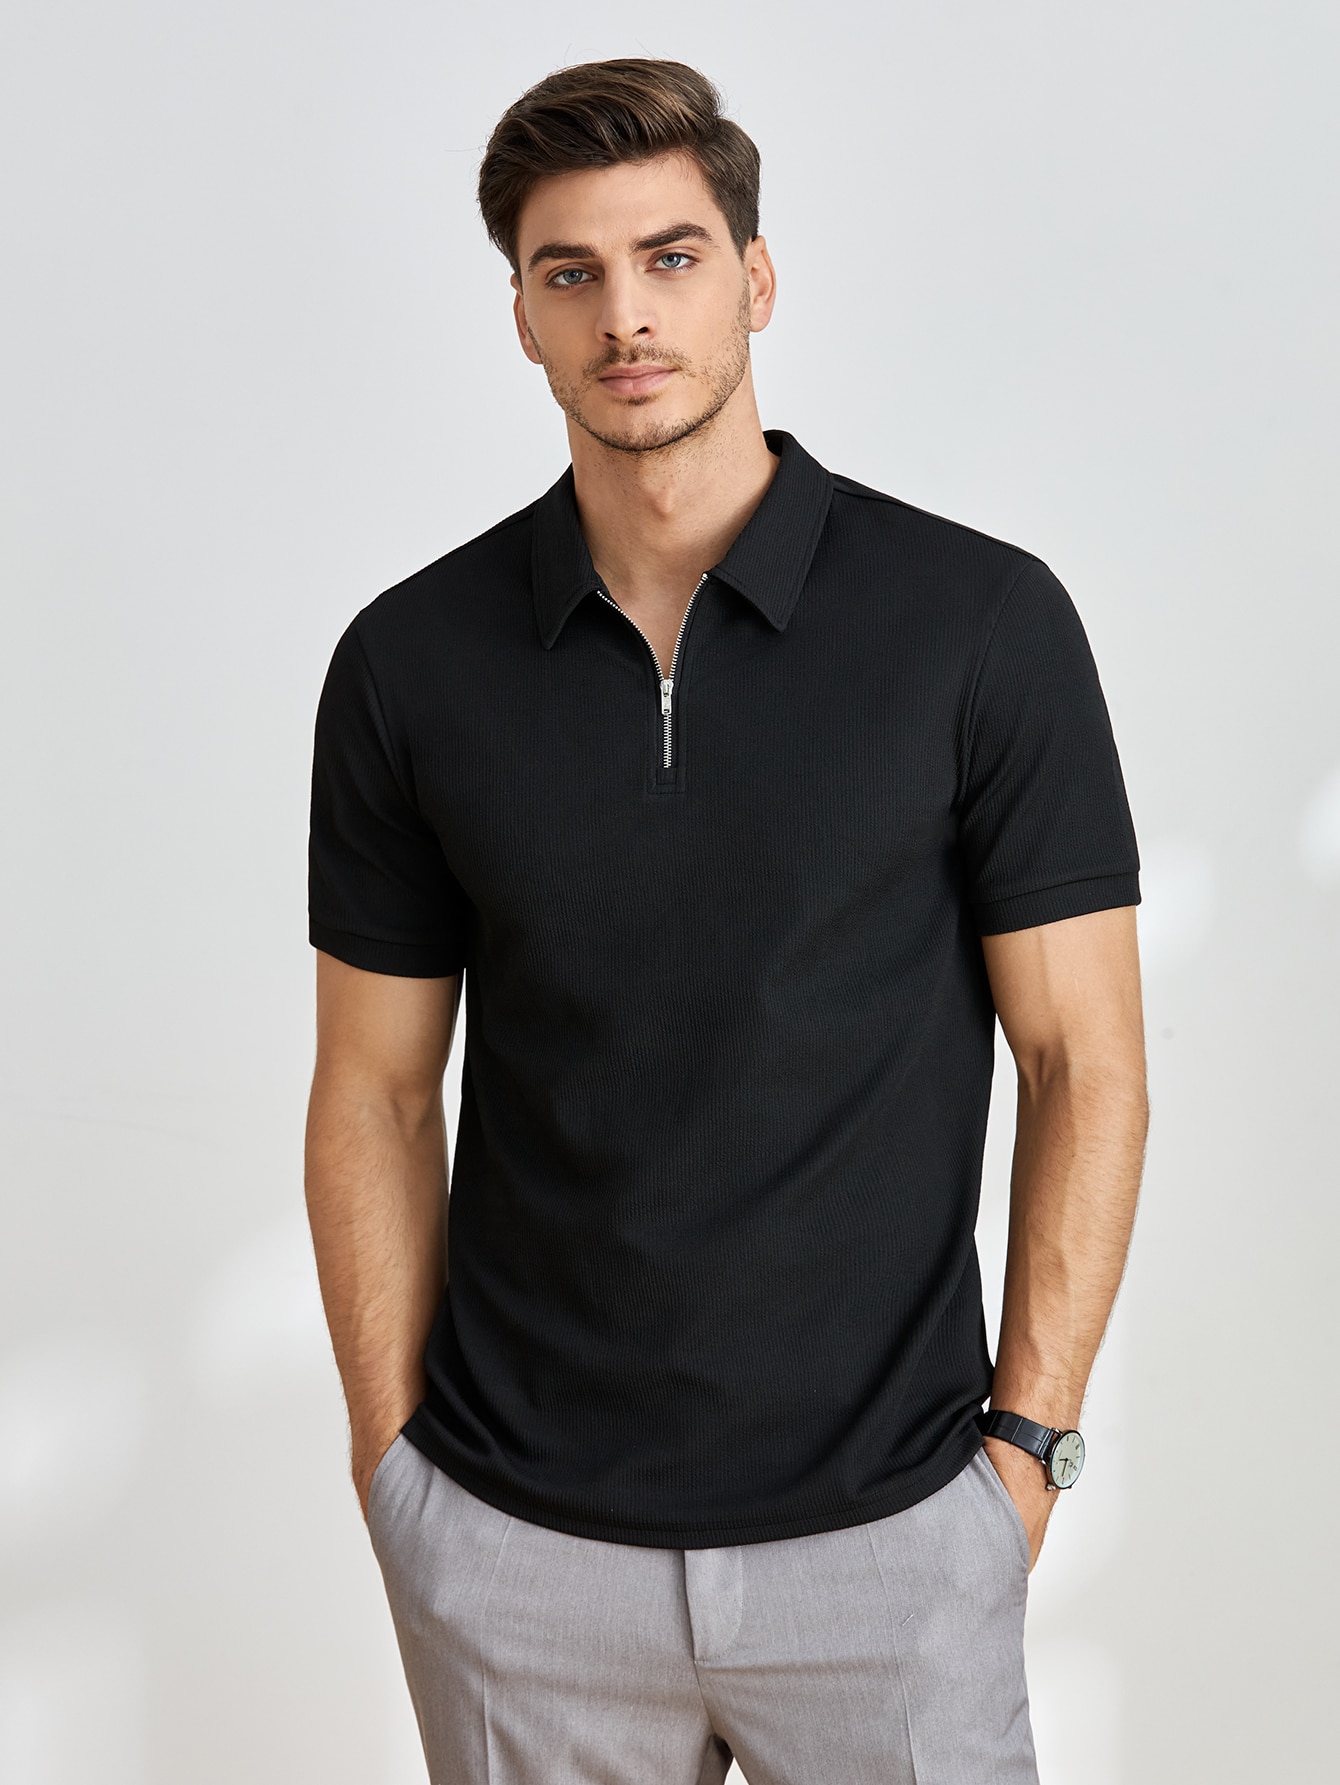 Мужская однотонная рубашка-поло с короткими рукавами Manfinity Homme, черный